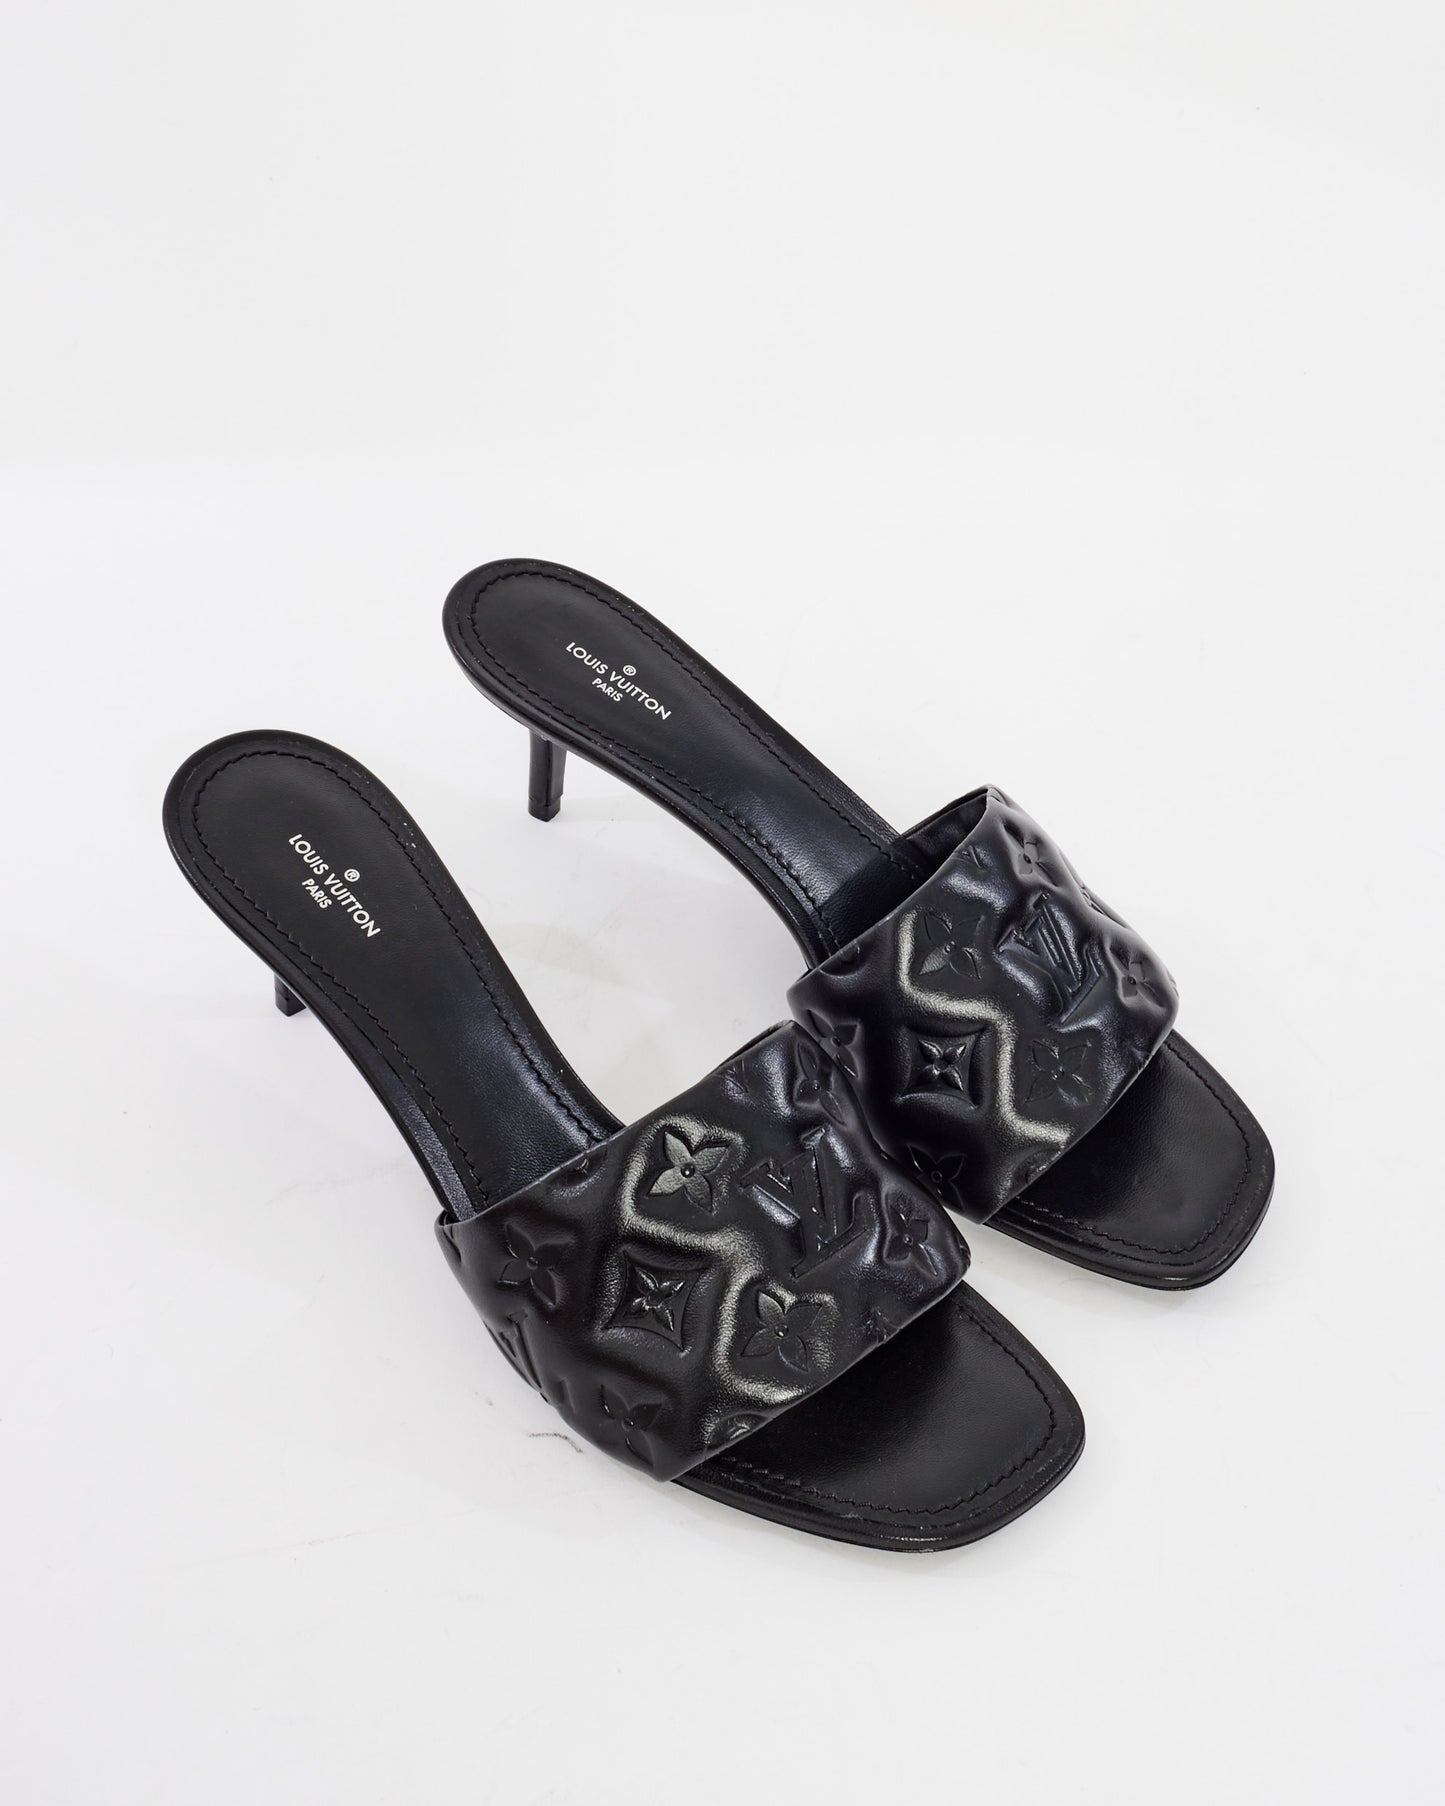 Louis Vuitton Black Empreinte Leather Revival Mule Heels - 41